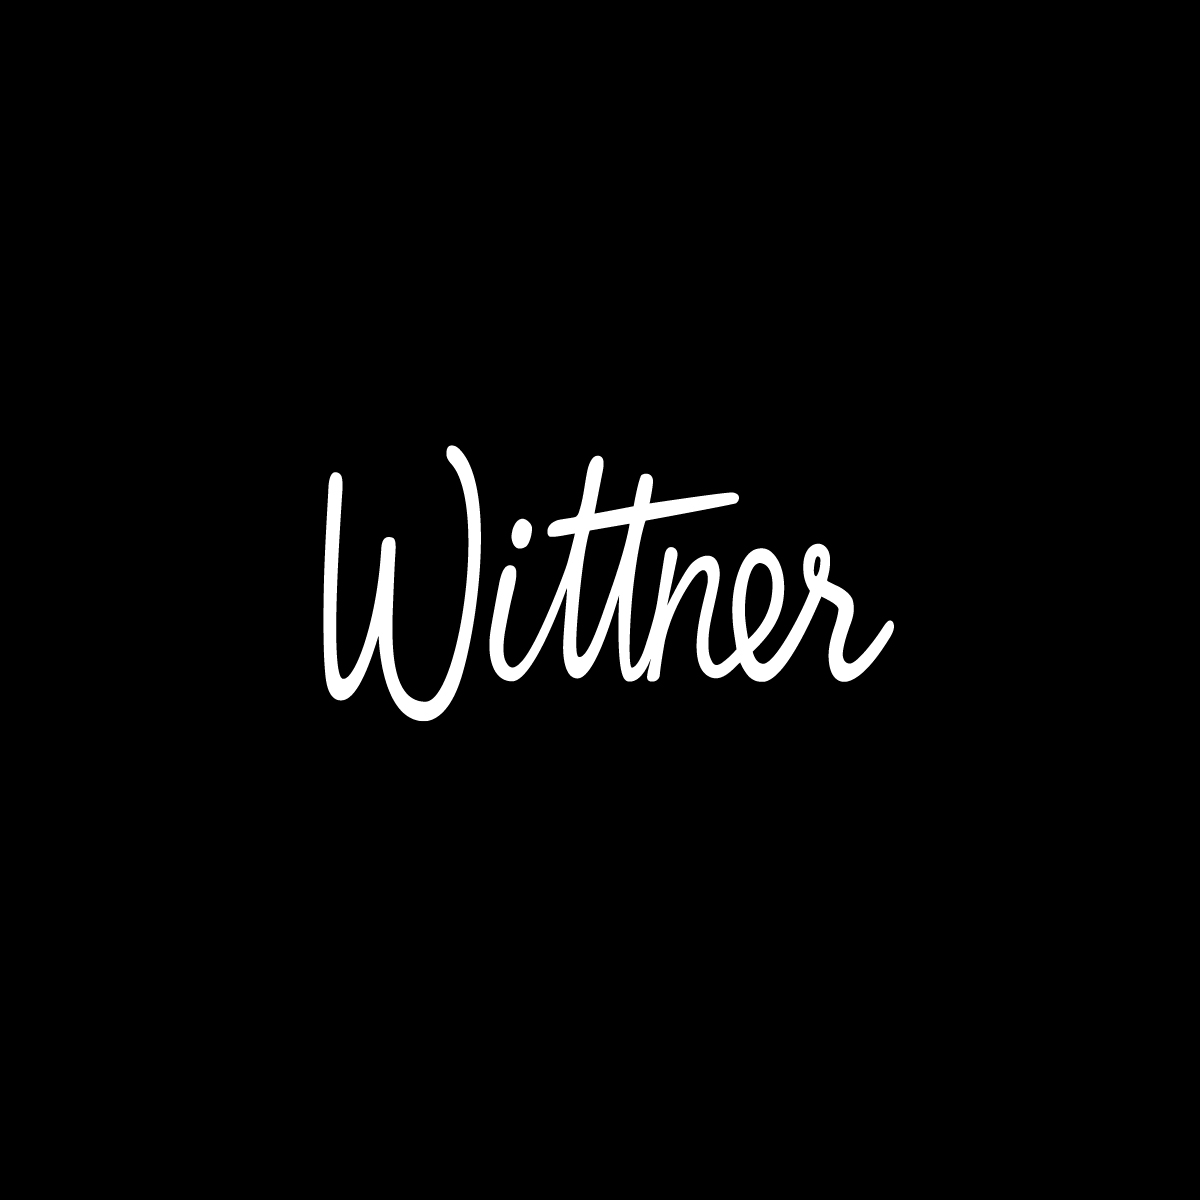 Wittner Brand Identity Brand Mark on black background